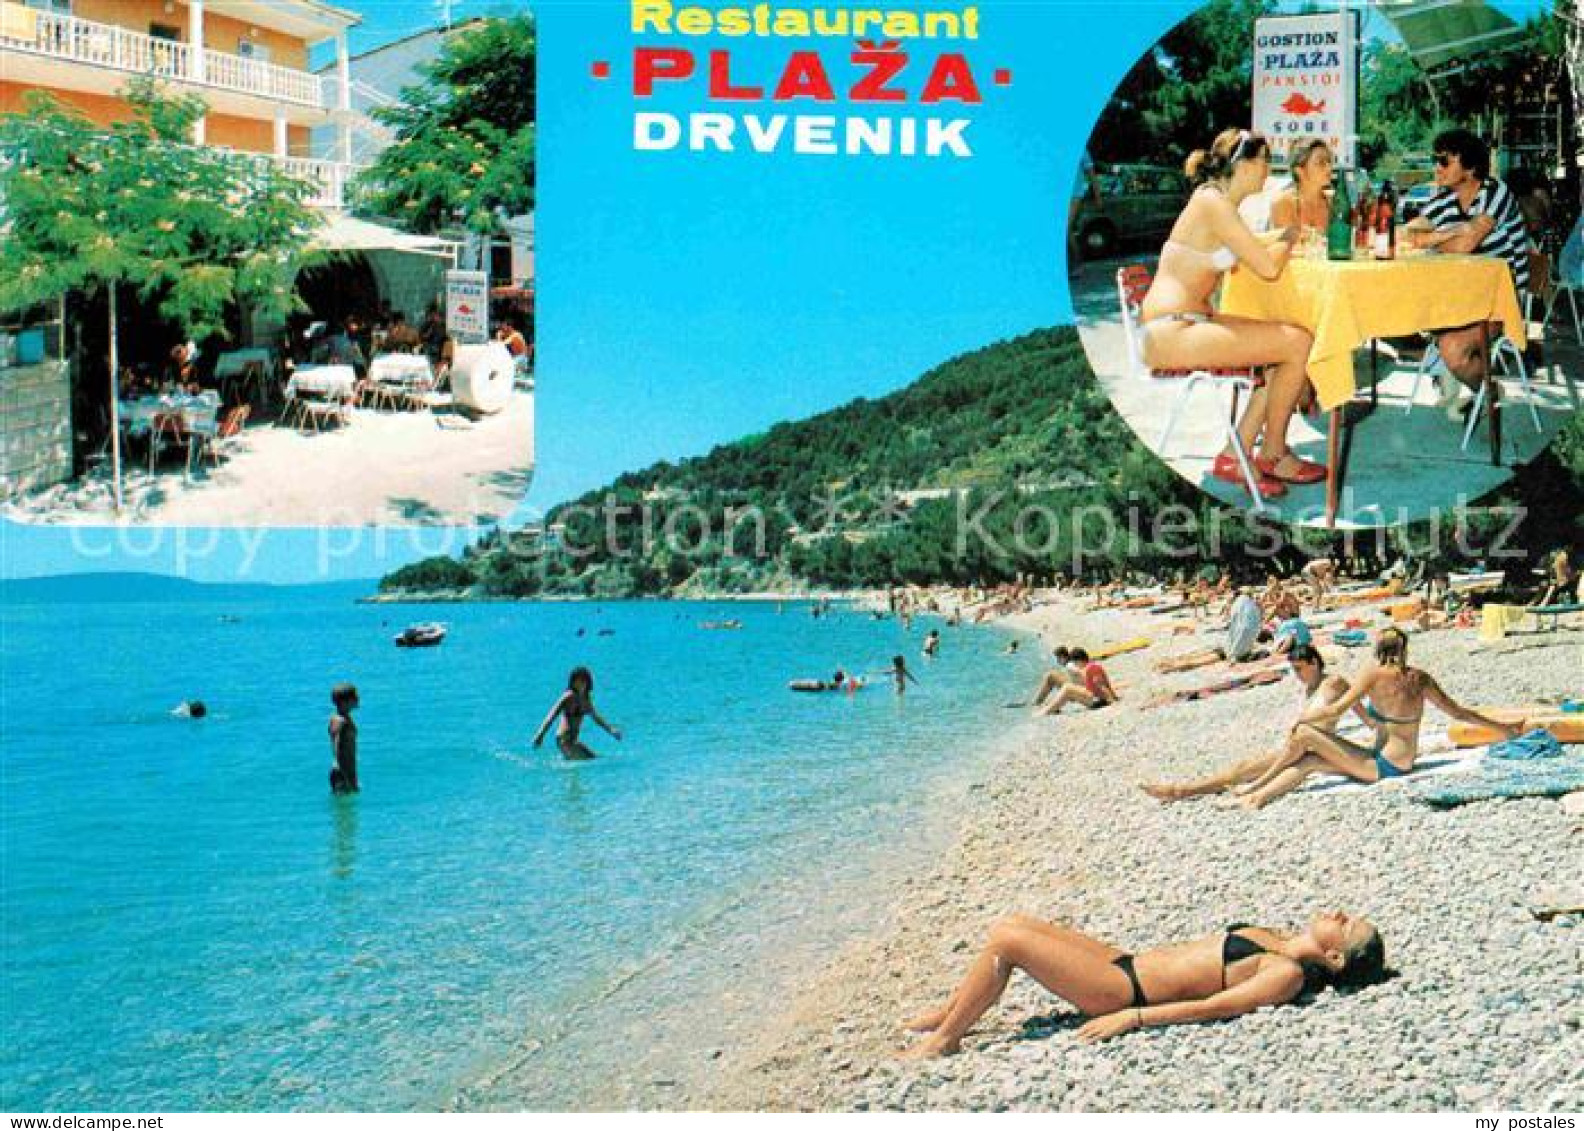 72750227 Drvenik Restaurant Plaza Drvenik - Croatia